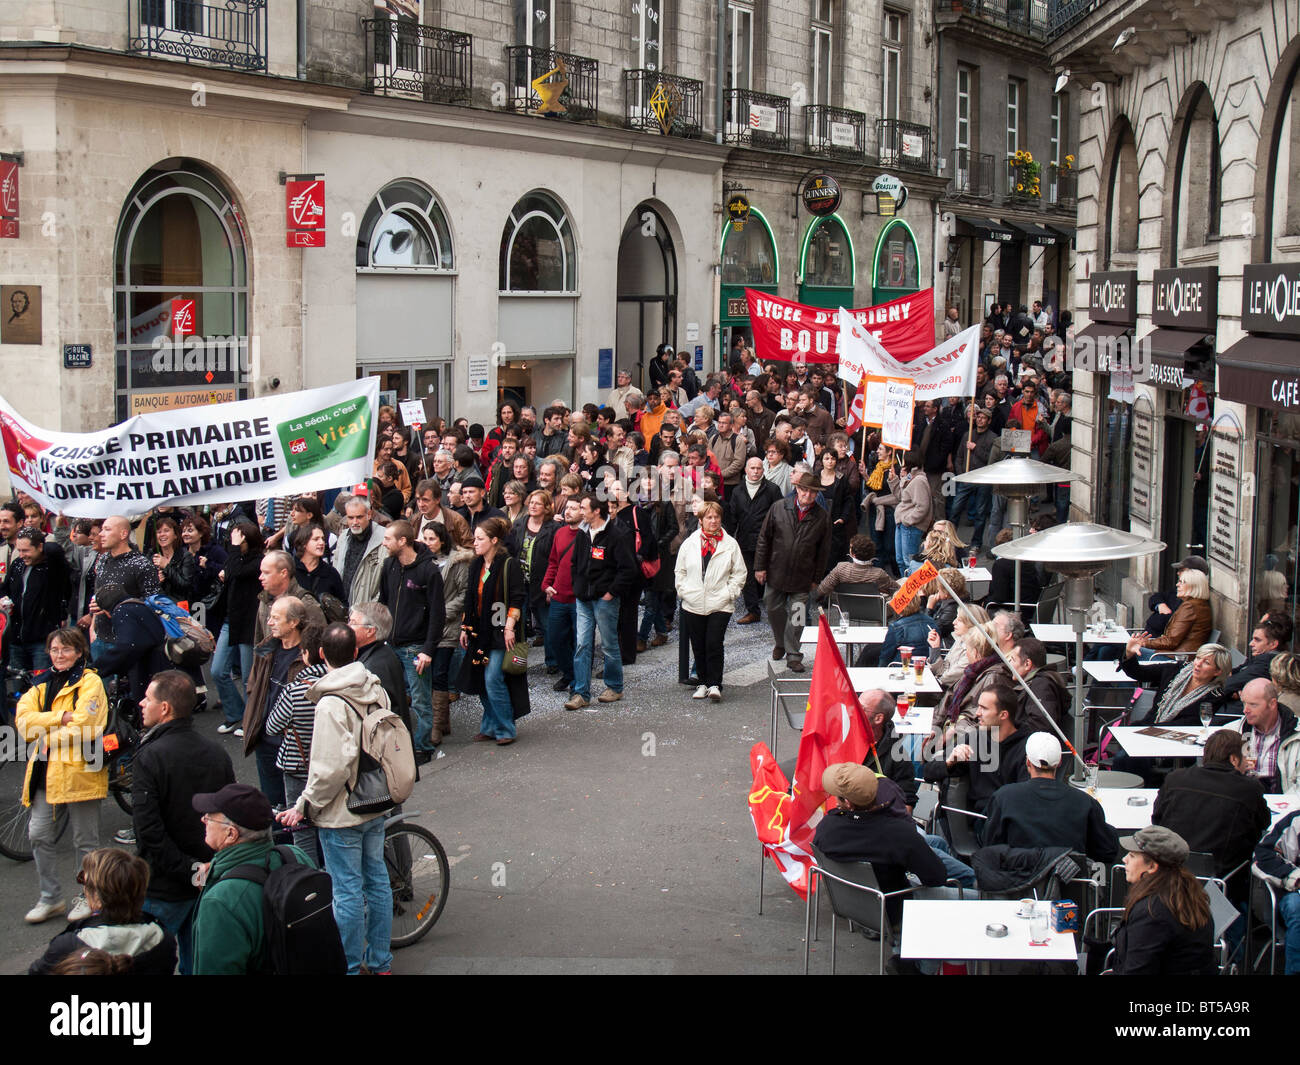 Les gens prennent part à une manifestation sur la réforme des pensions à Nantes, France, Octobre 19, 2010 Banque D'Images